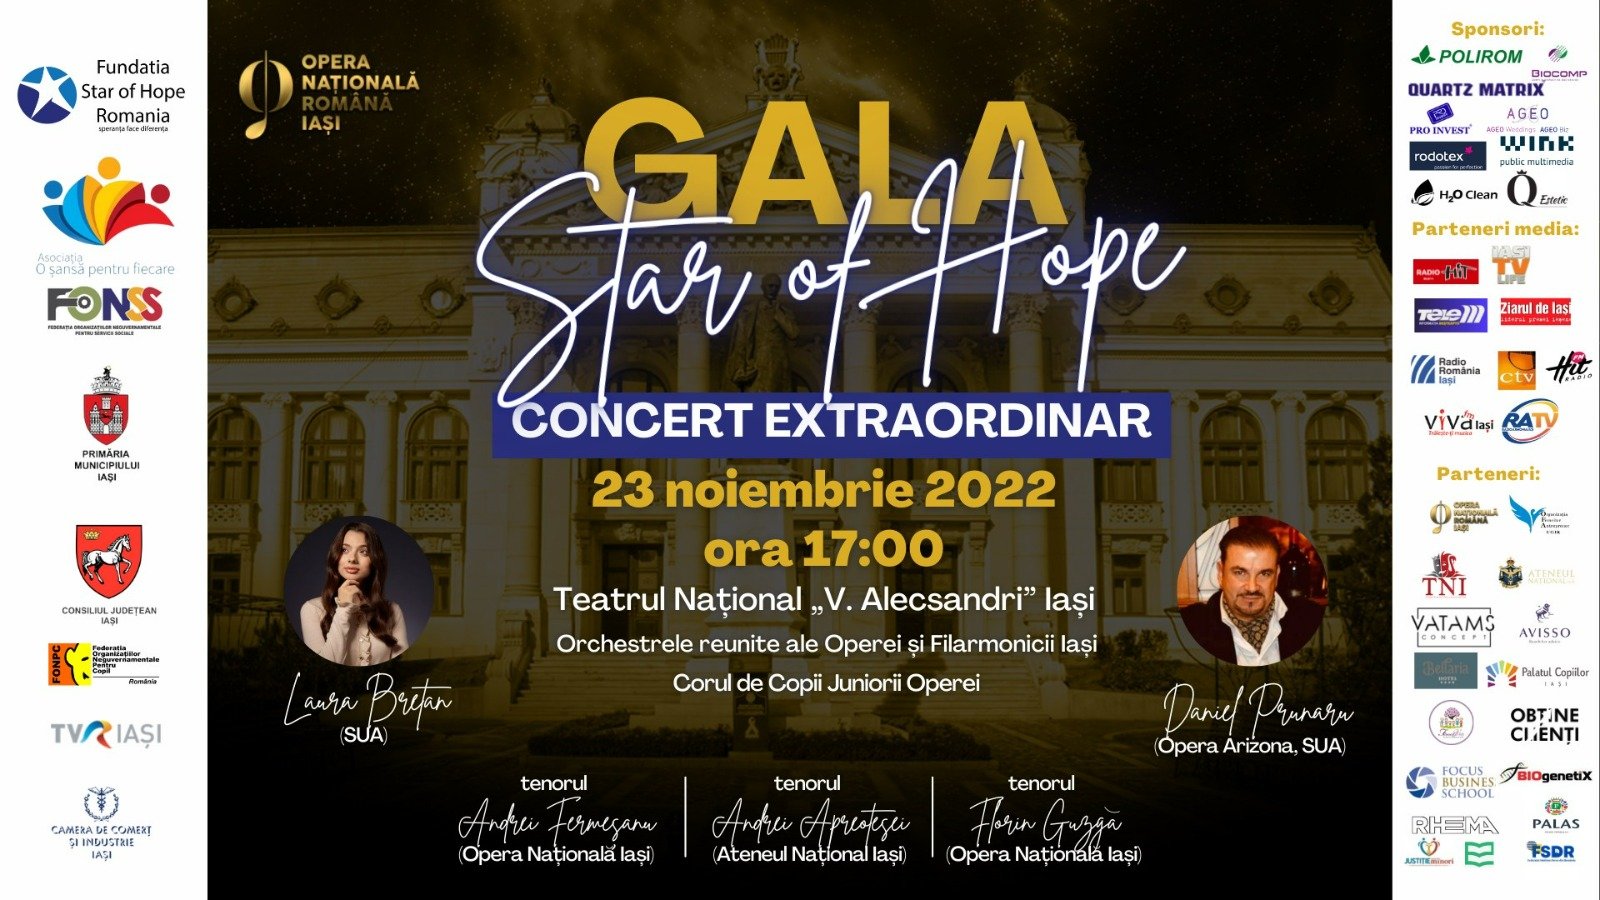  Invitaţi de peste Ocean la Gala de caritate Star of Hope